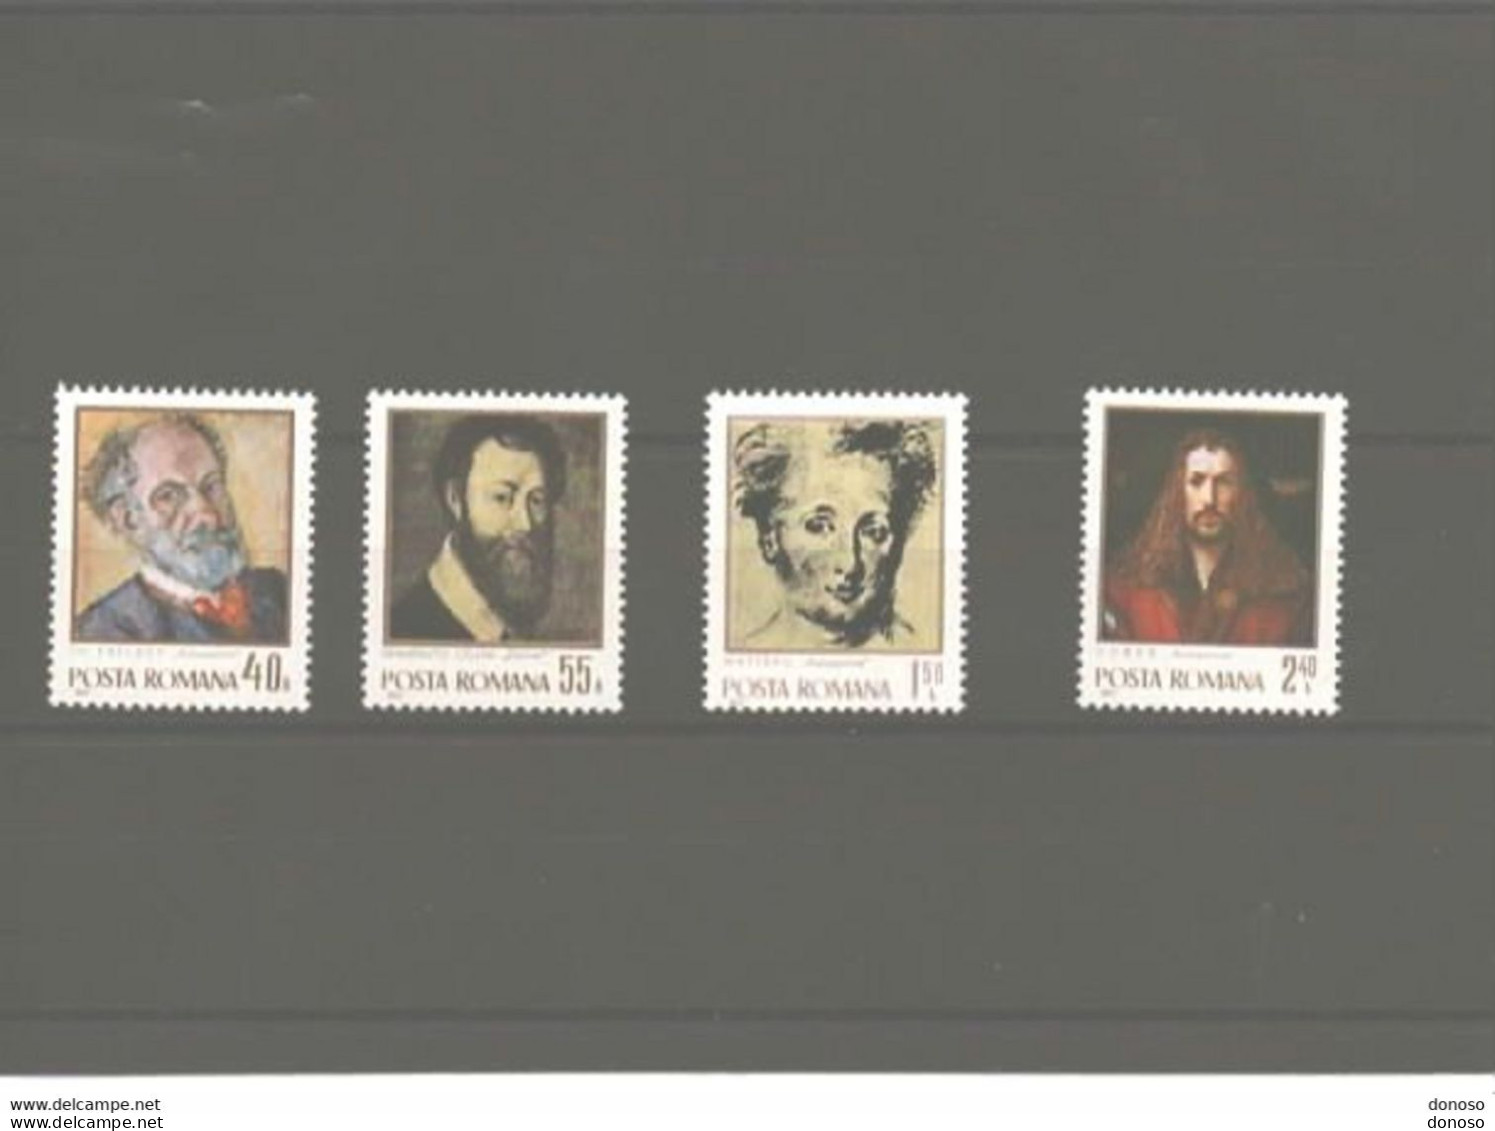 ROUMANIE 1971 Peintures, Autoportraits De Pallady, Cellini, Watteau, Dürer  Yvert 2648-2651, Michel 2979-2982 NEUF** MNH - Unused Stamps